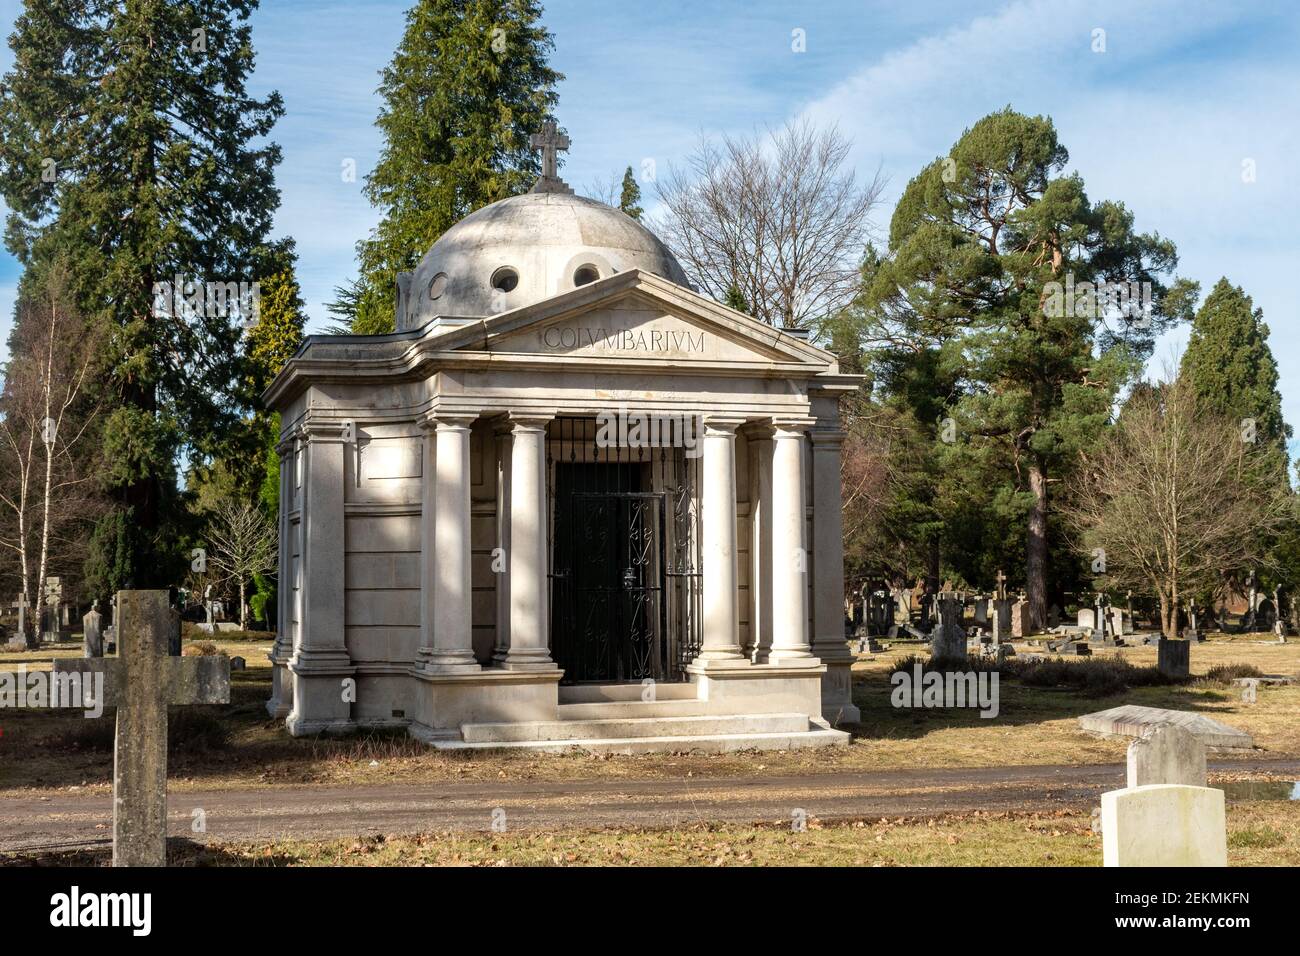 Il columbarium, un edificio commemorativo costruito in pietra bianca per immagazzinare le urne cremative, Brookwood Cemetery, Surrey, Inghilterra, UK Foto Stock